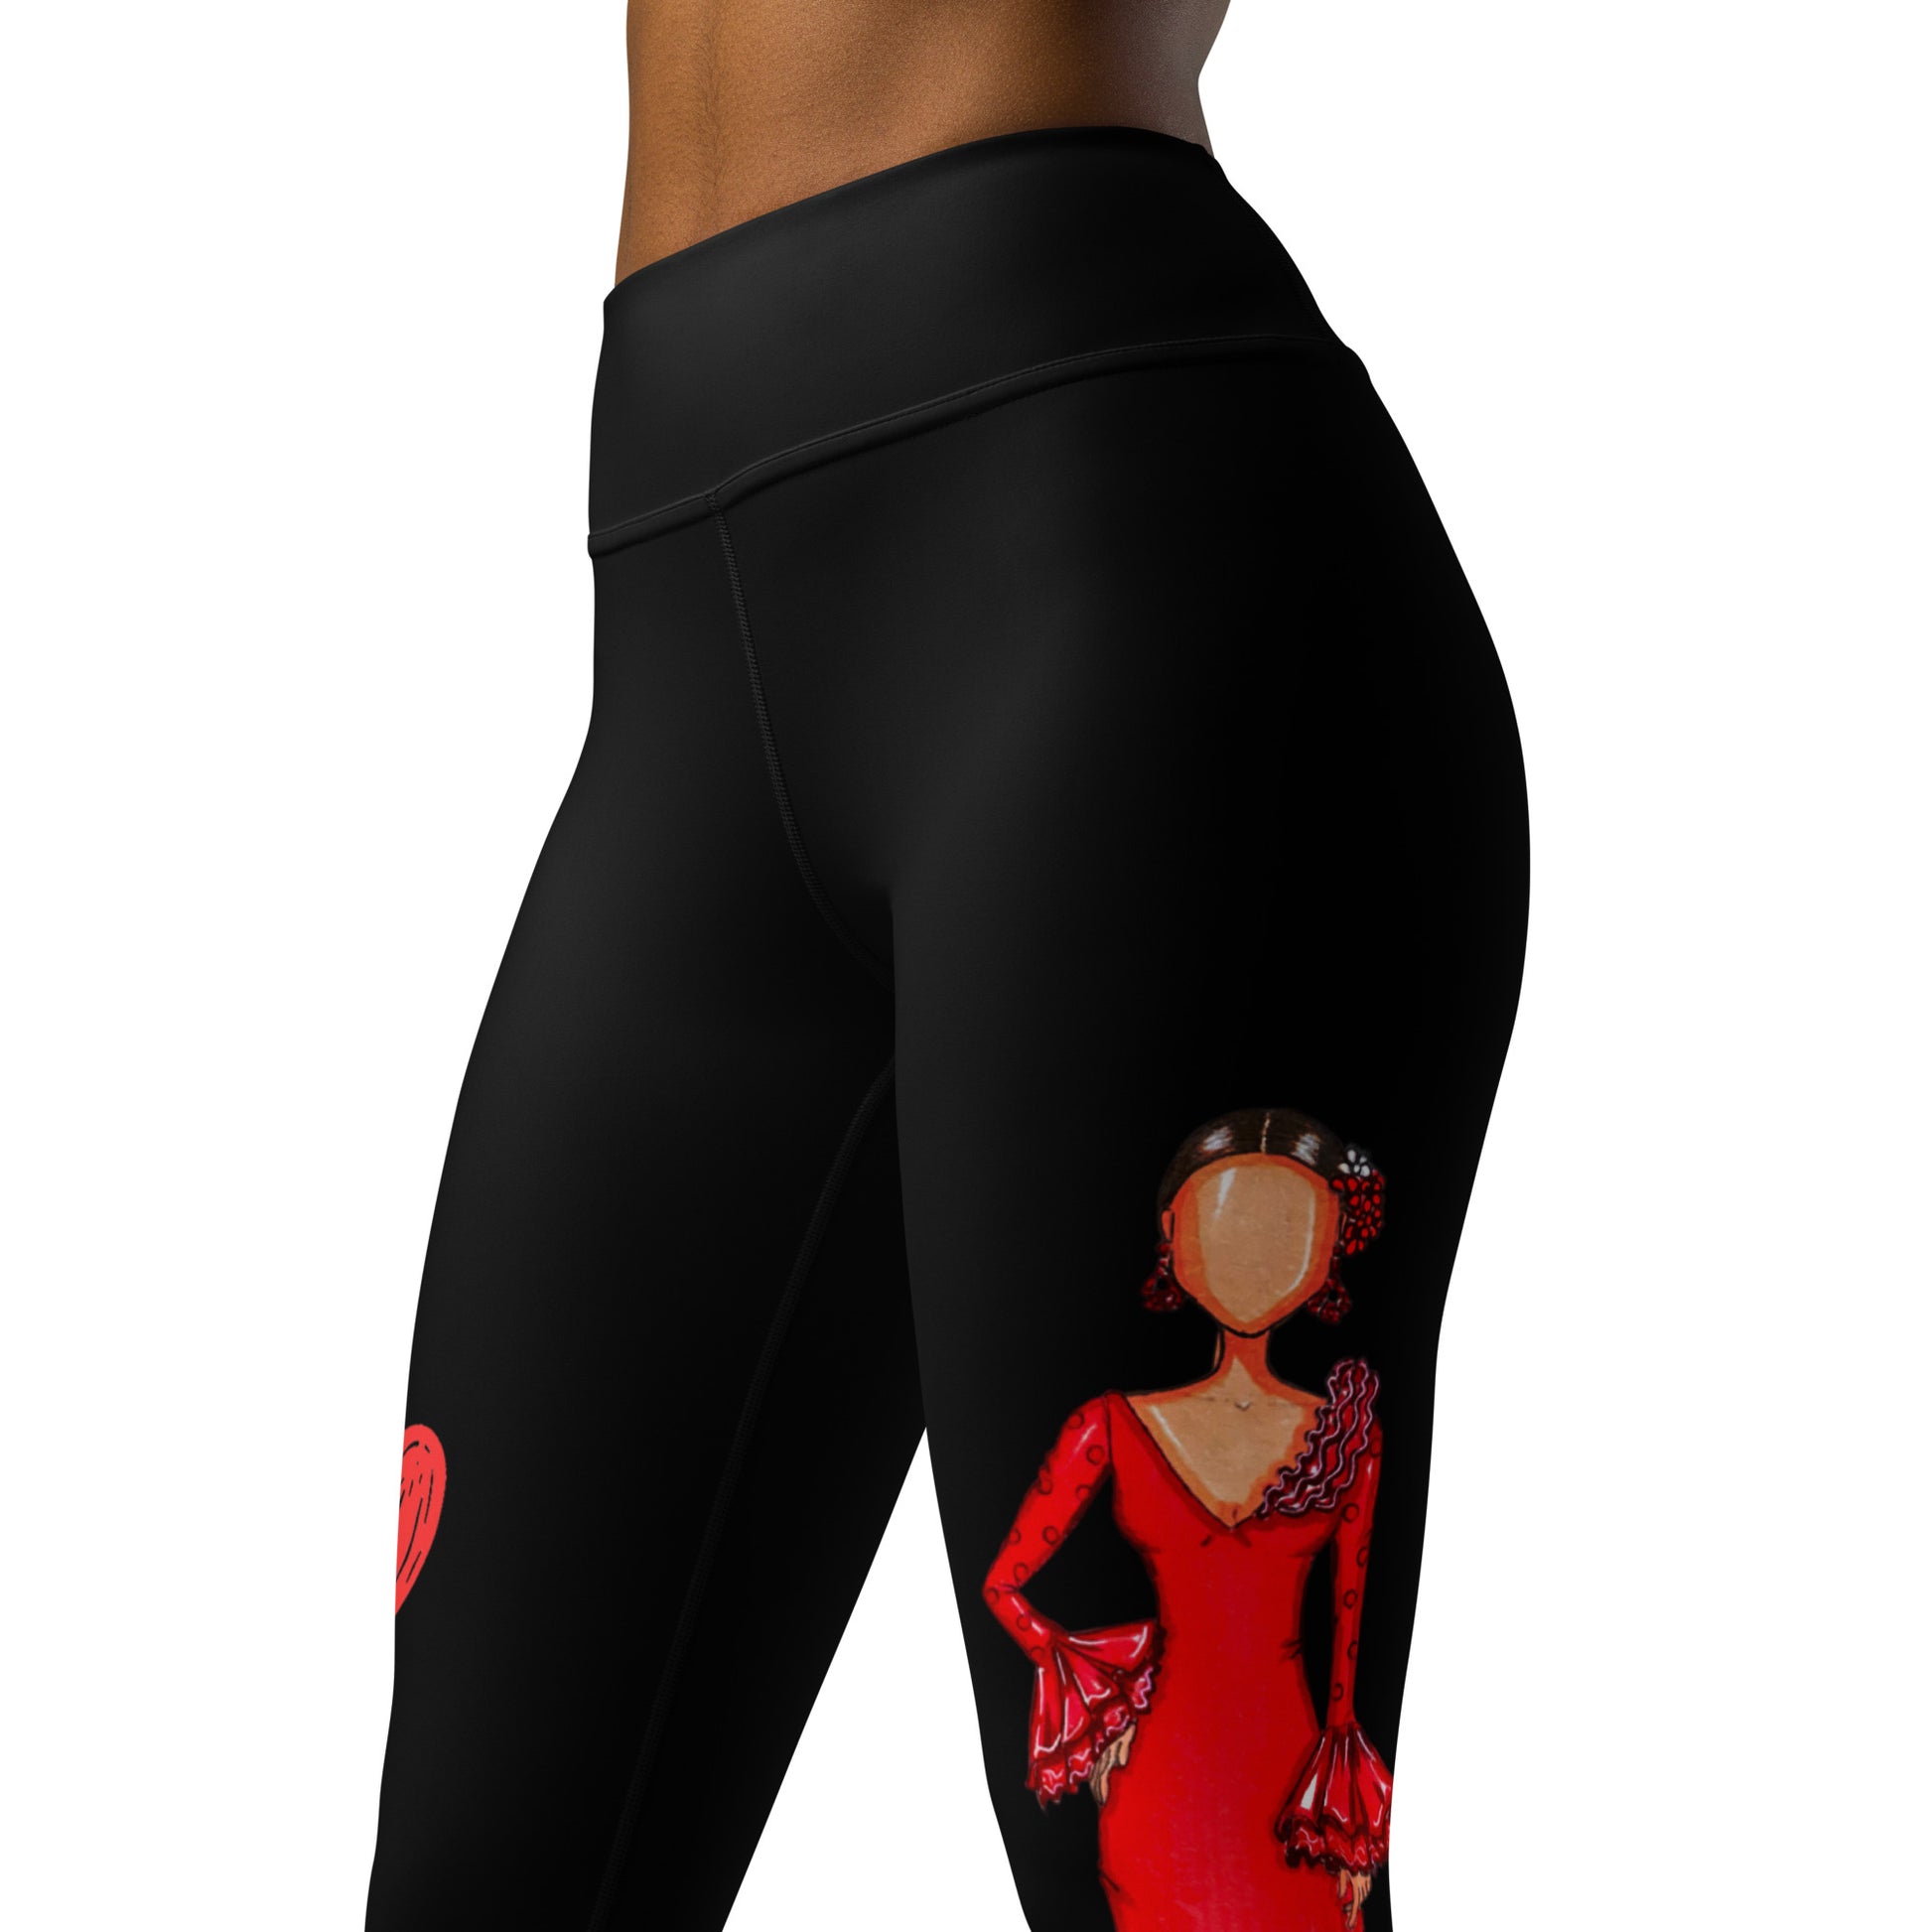 Flamenco Dancer Leggings, black high waisted yoga leggings with a red dress design - IllustrArte